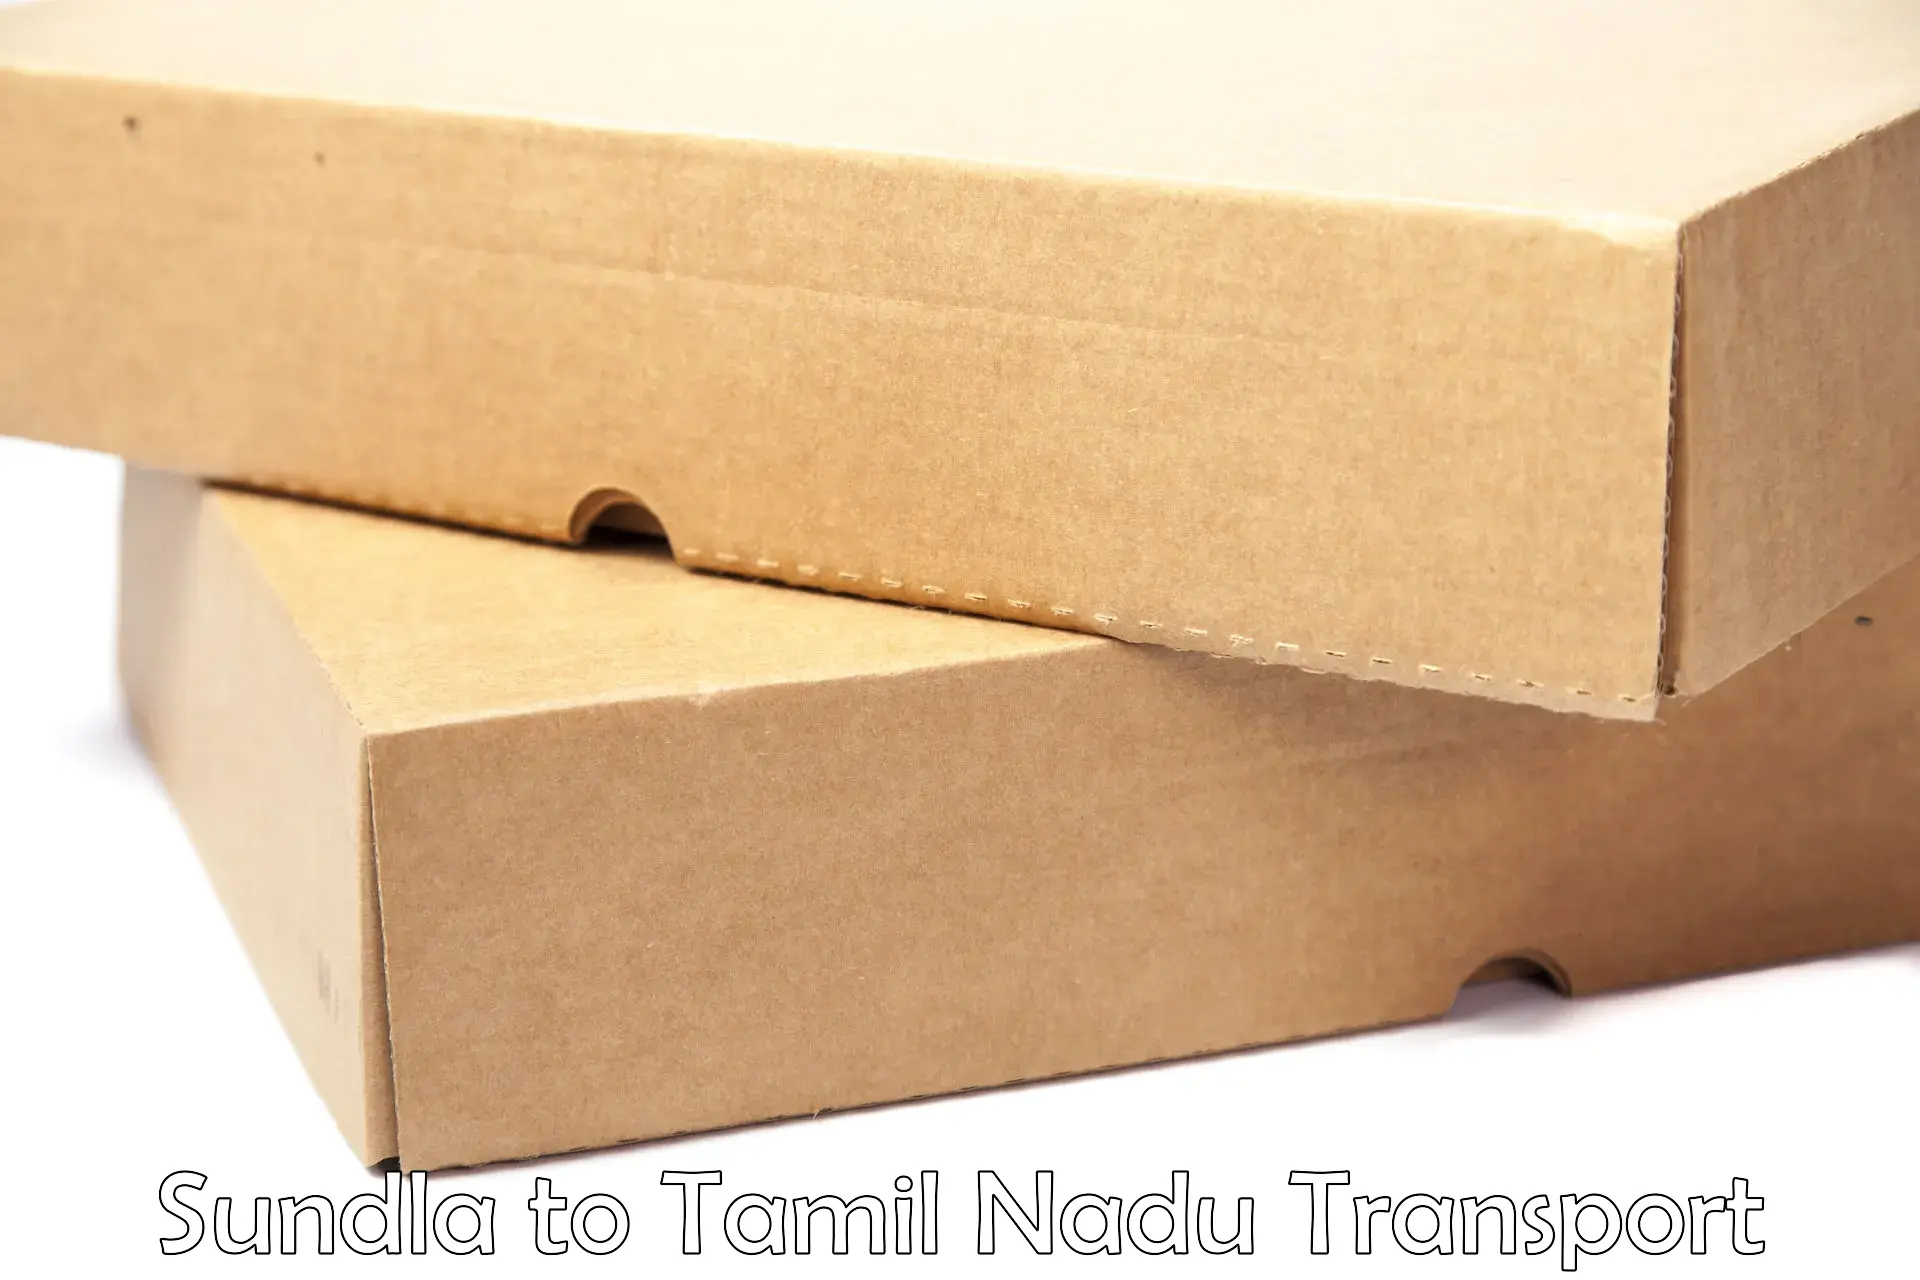 Transportation services Sundla to Thiruthuraipoondi